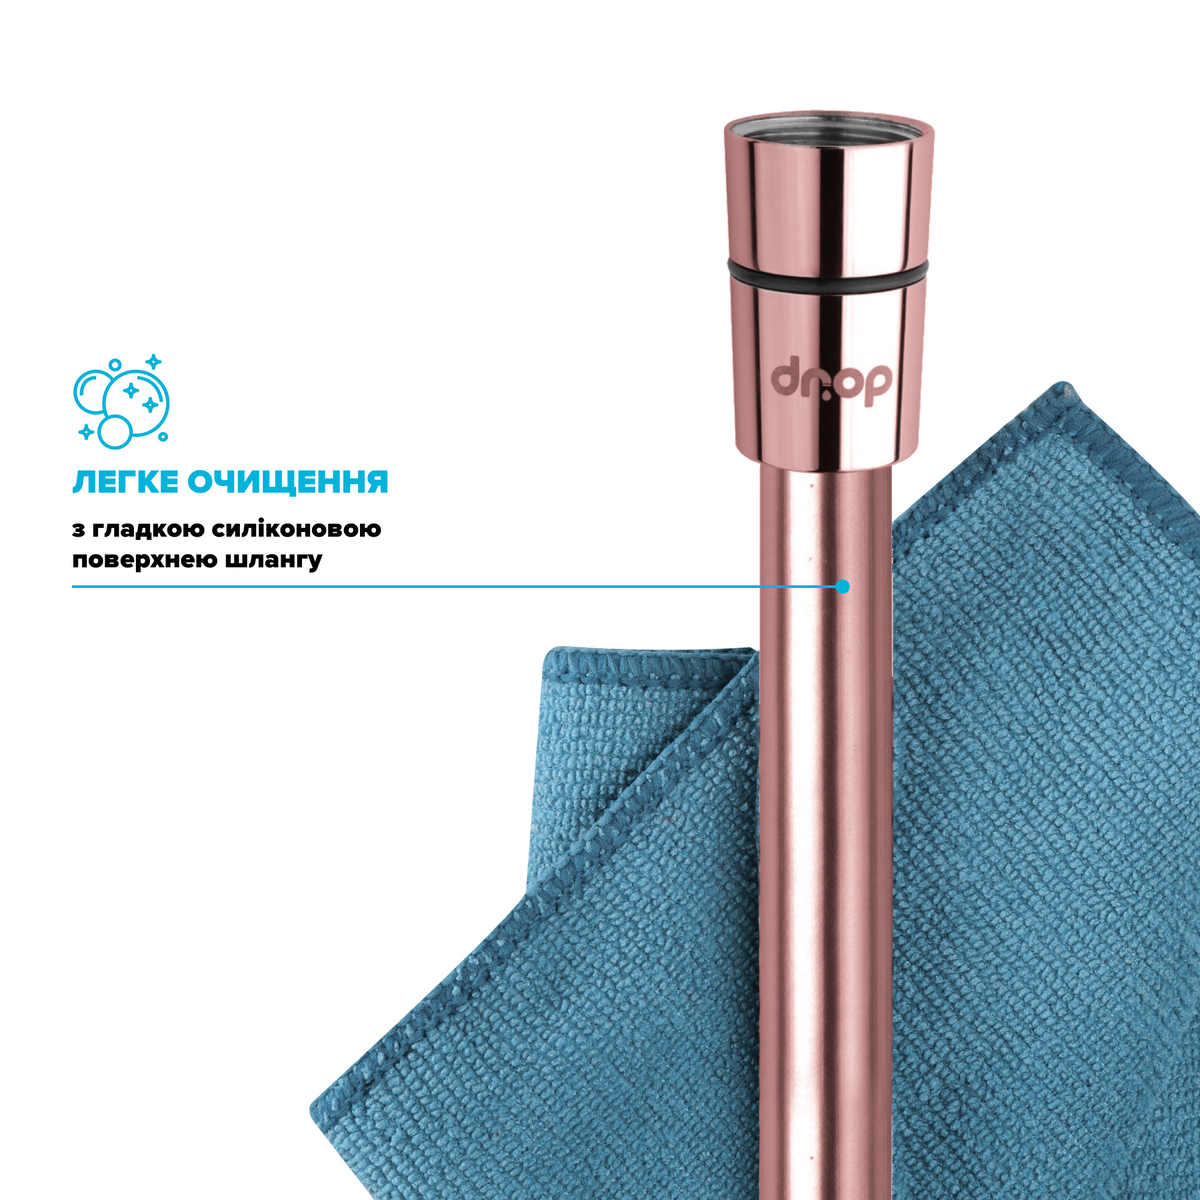 Шланг для душа DROP Silk DuoFlex полимерный с двойным Анти-Твистом 175 см розовое золото SH-H175-ROS-P